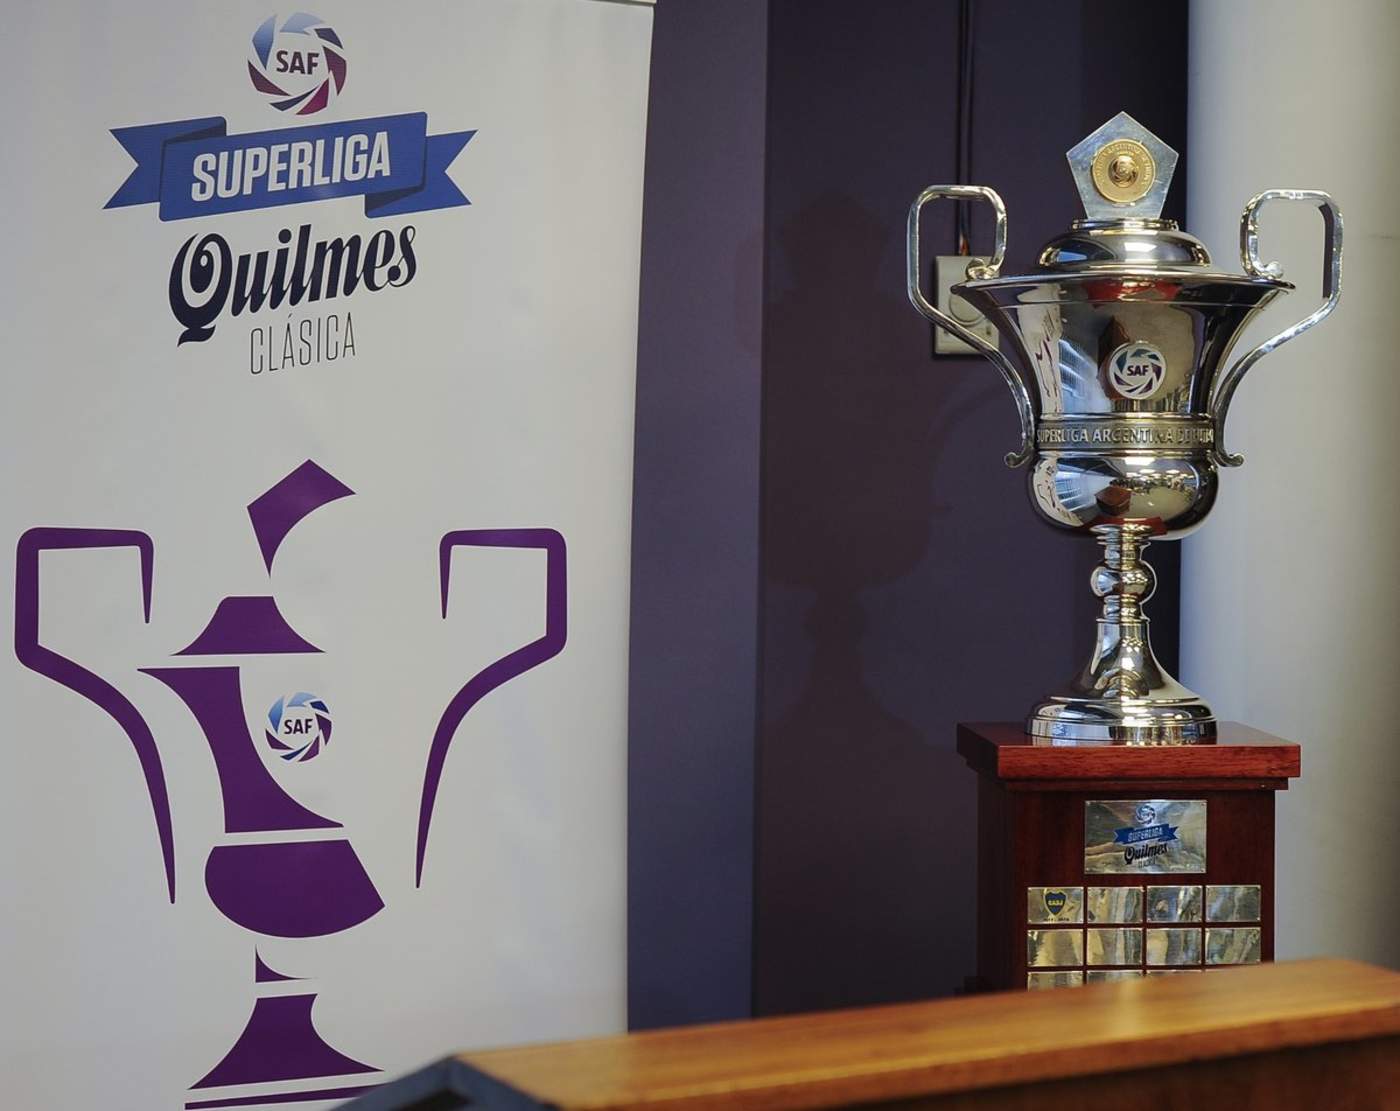 El campeonato en Argentina se une a otra de las ligas que contarán con el sistema VAR para apoyar a sus árbitros. (Especial)